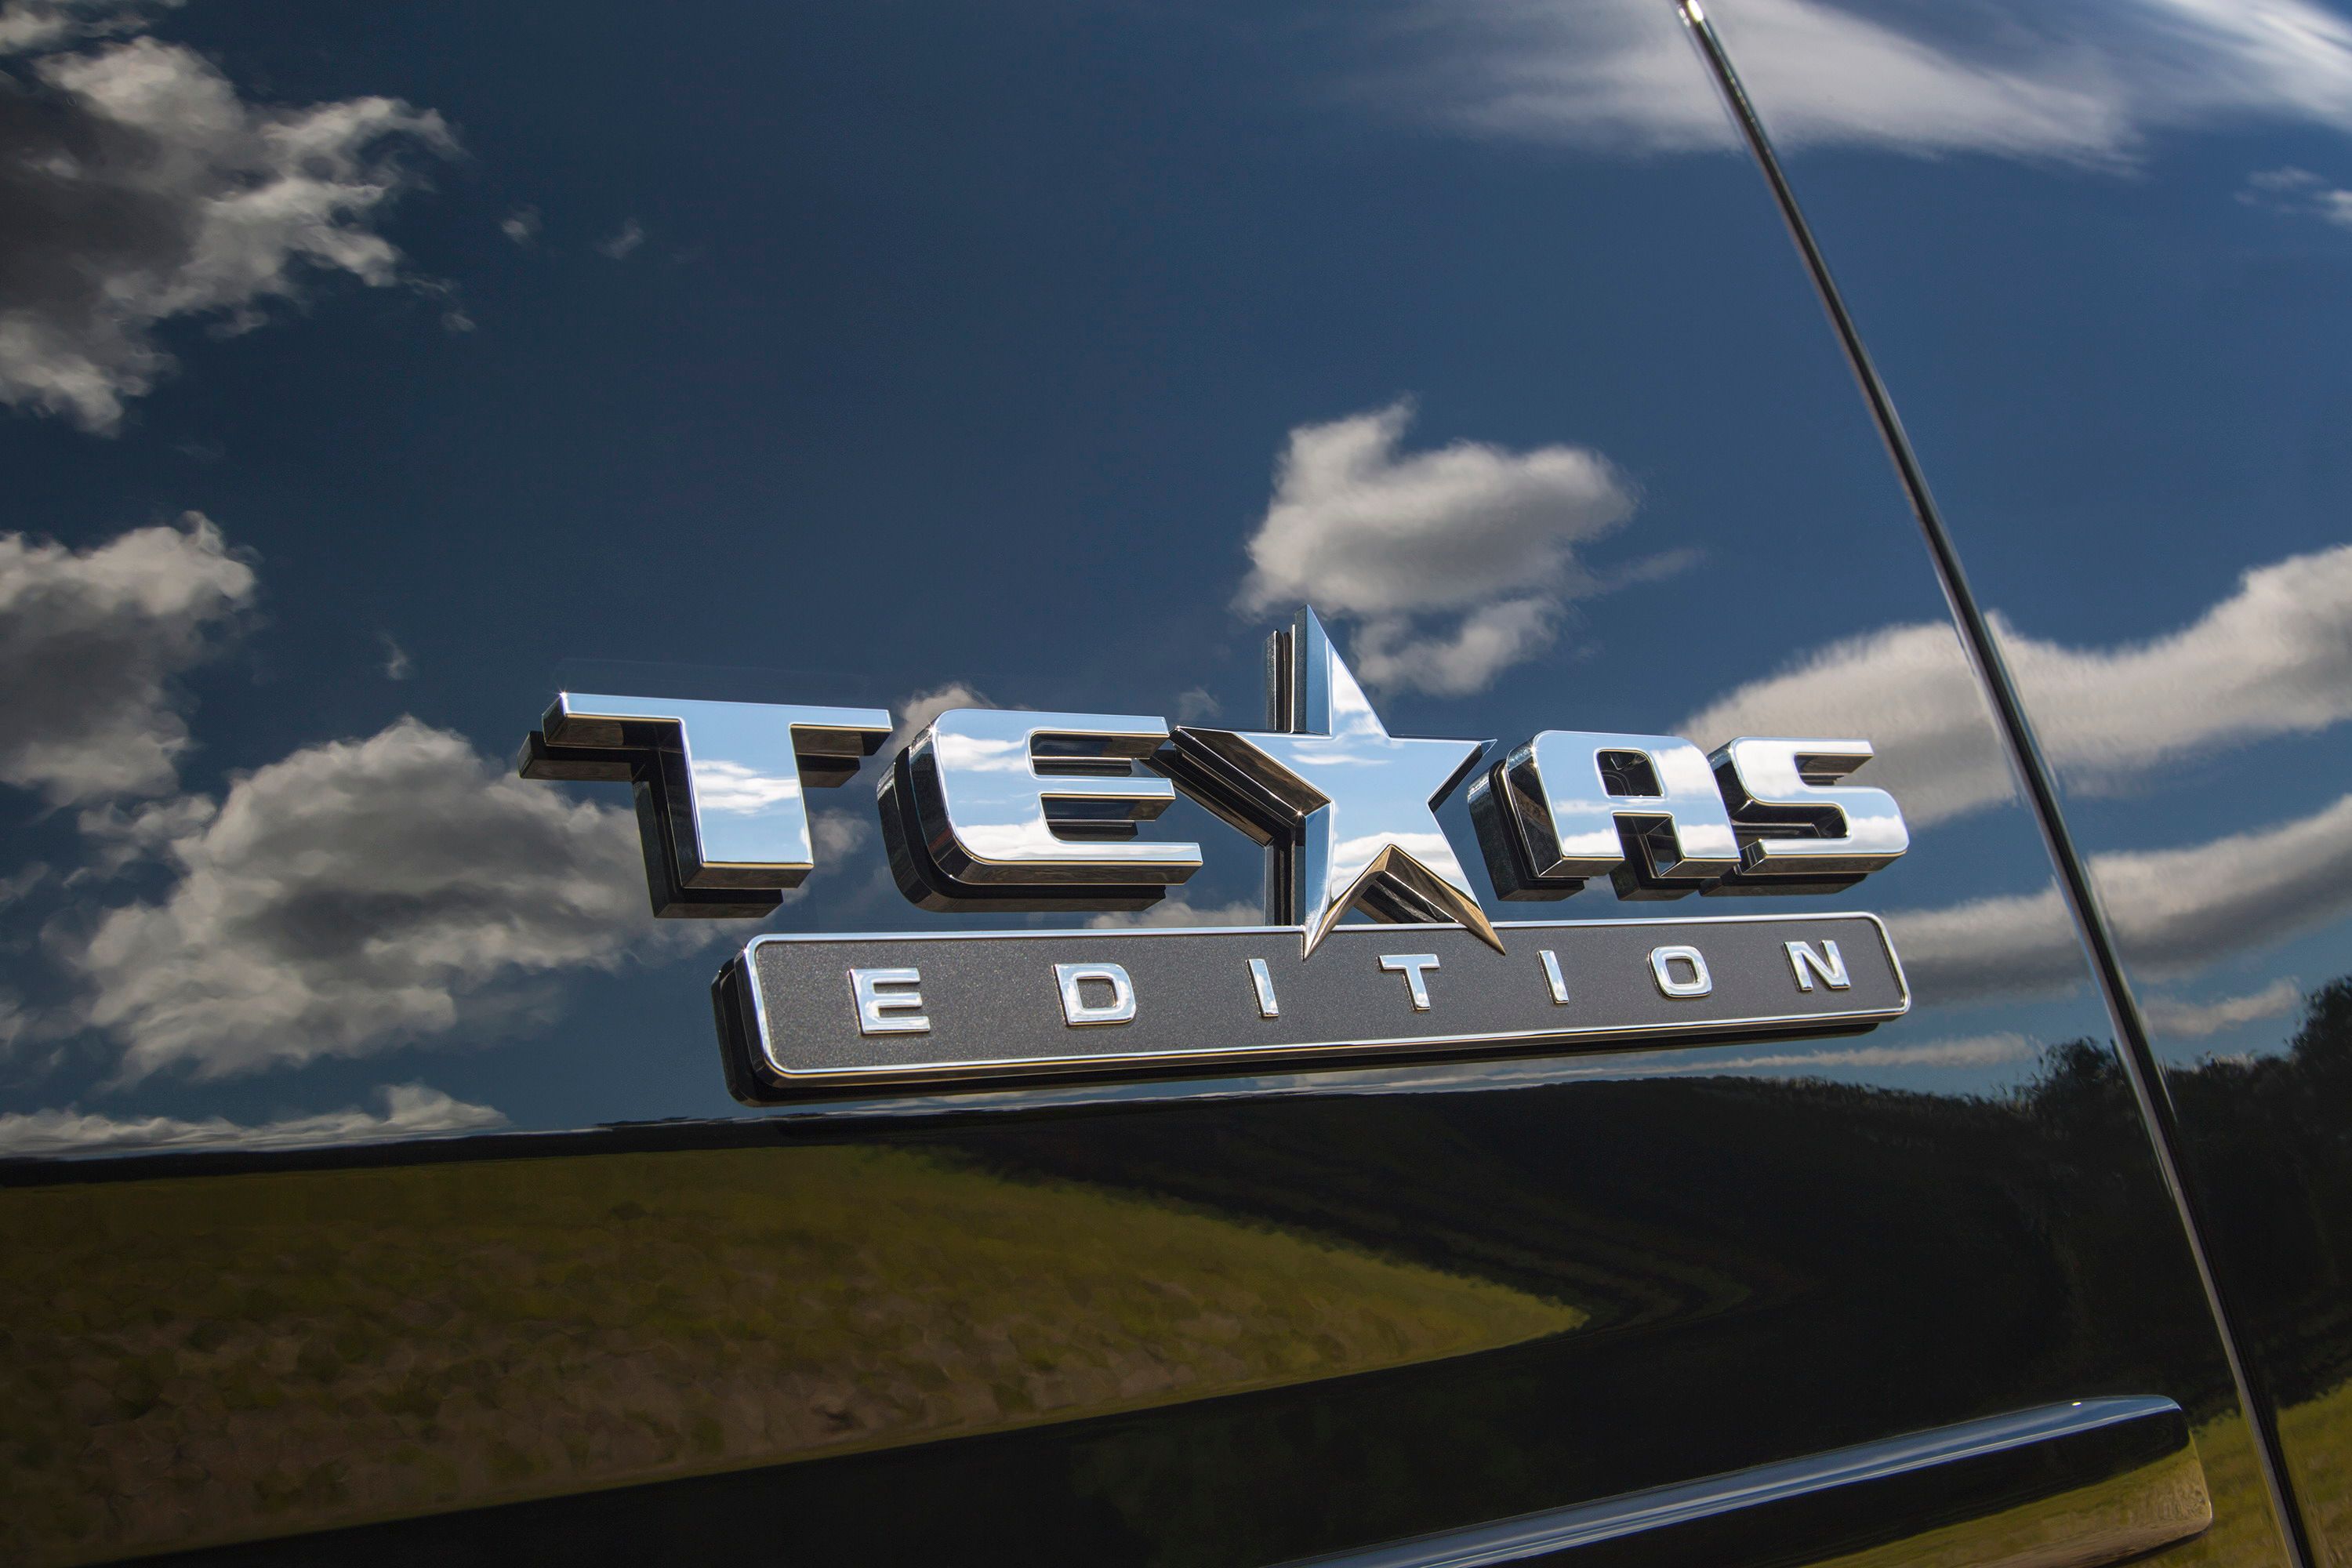 2015 Chevrolet Suburban Texas Edition